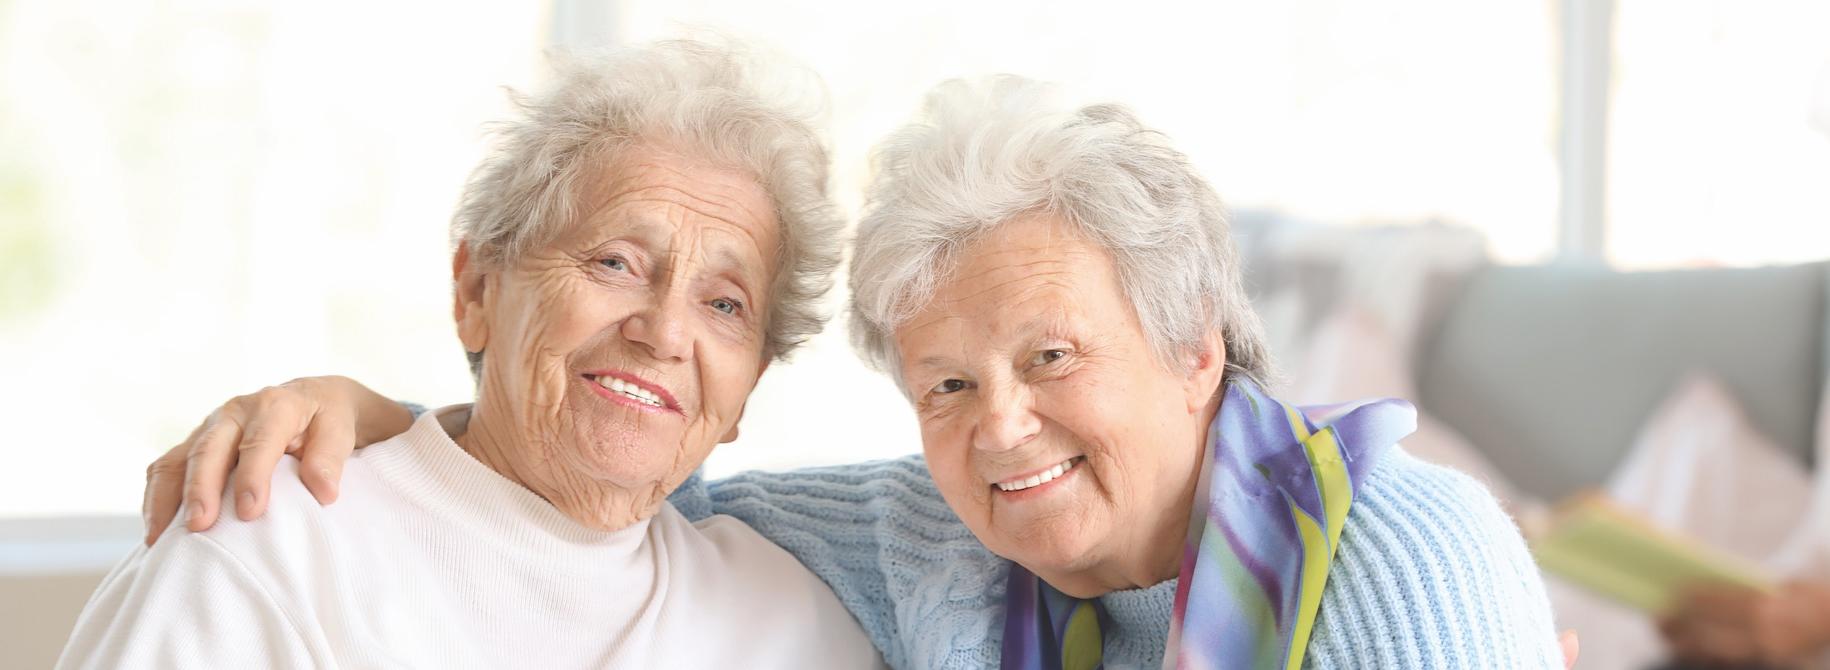 Résidences Vivre Adom - Bien vieillir ensemble